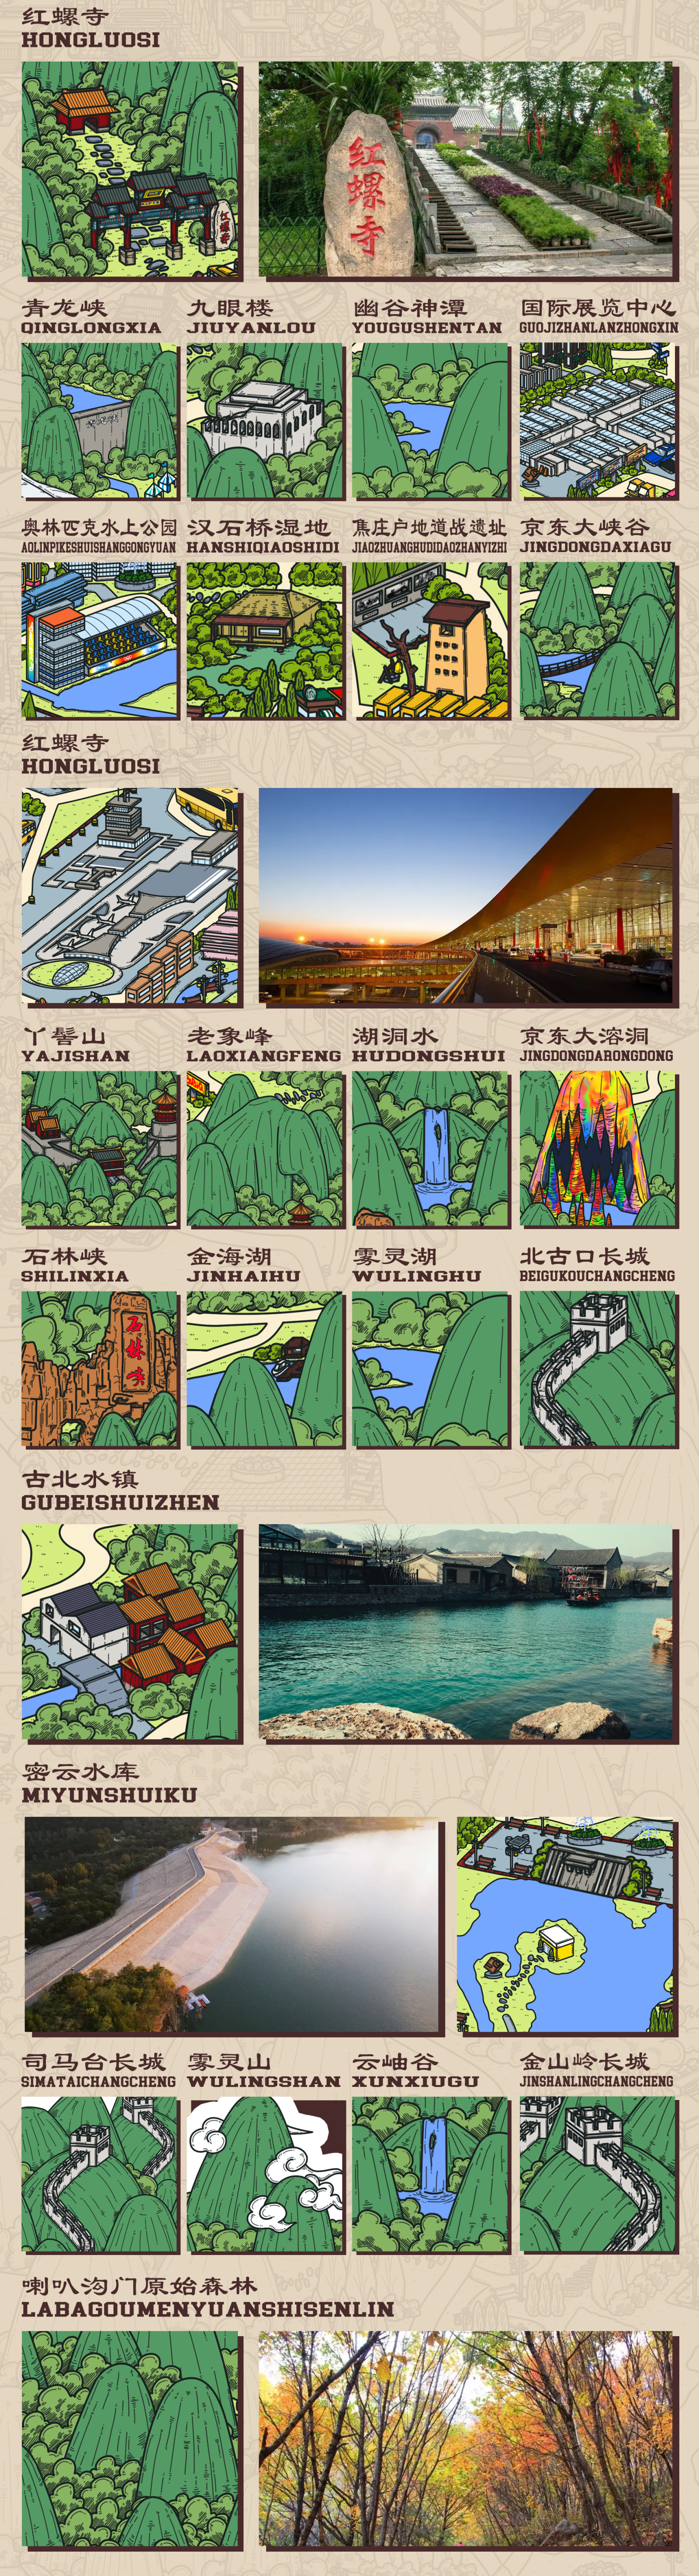 北京城的景区旅游文创手绘地图